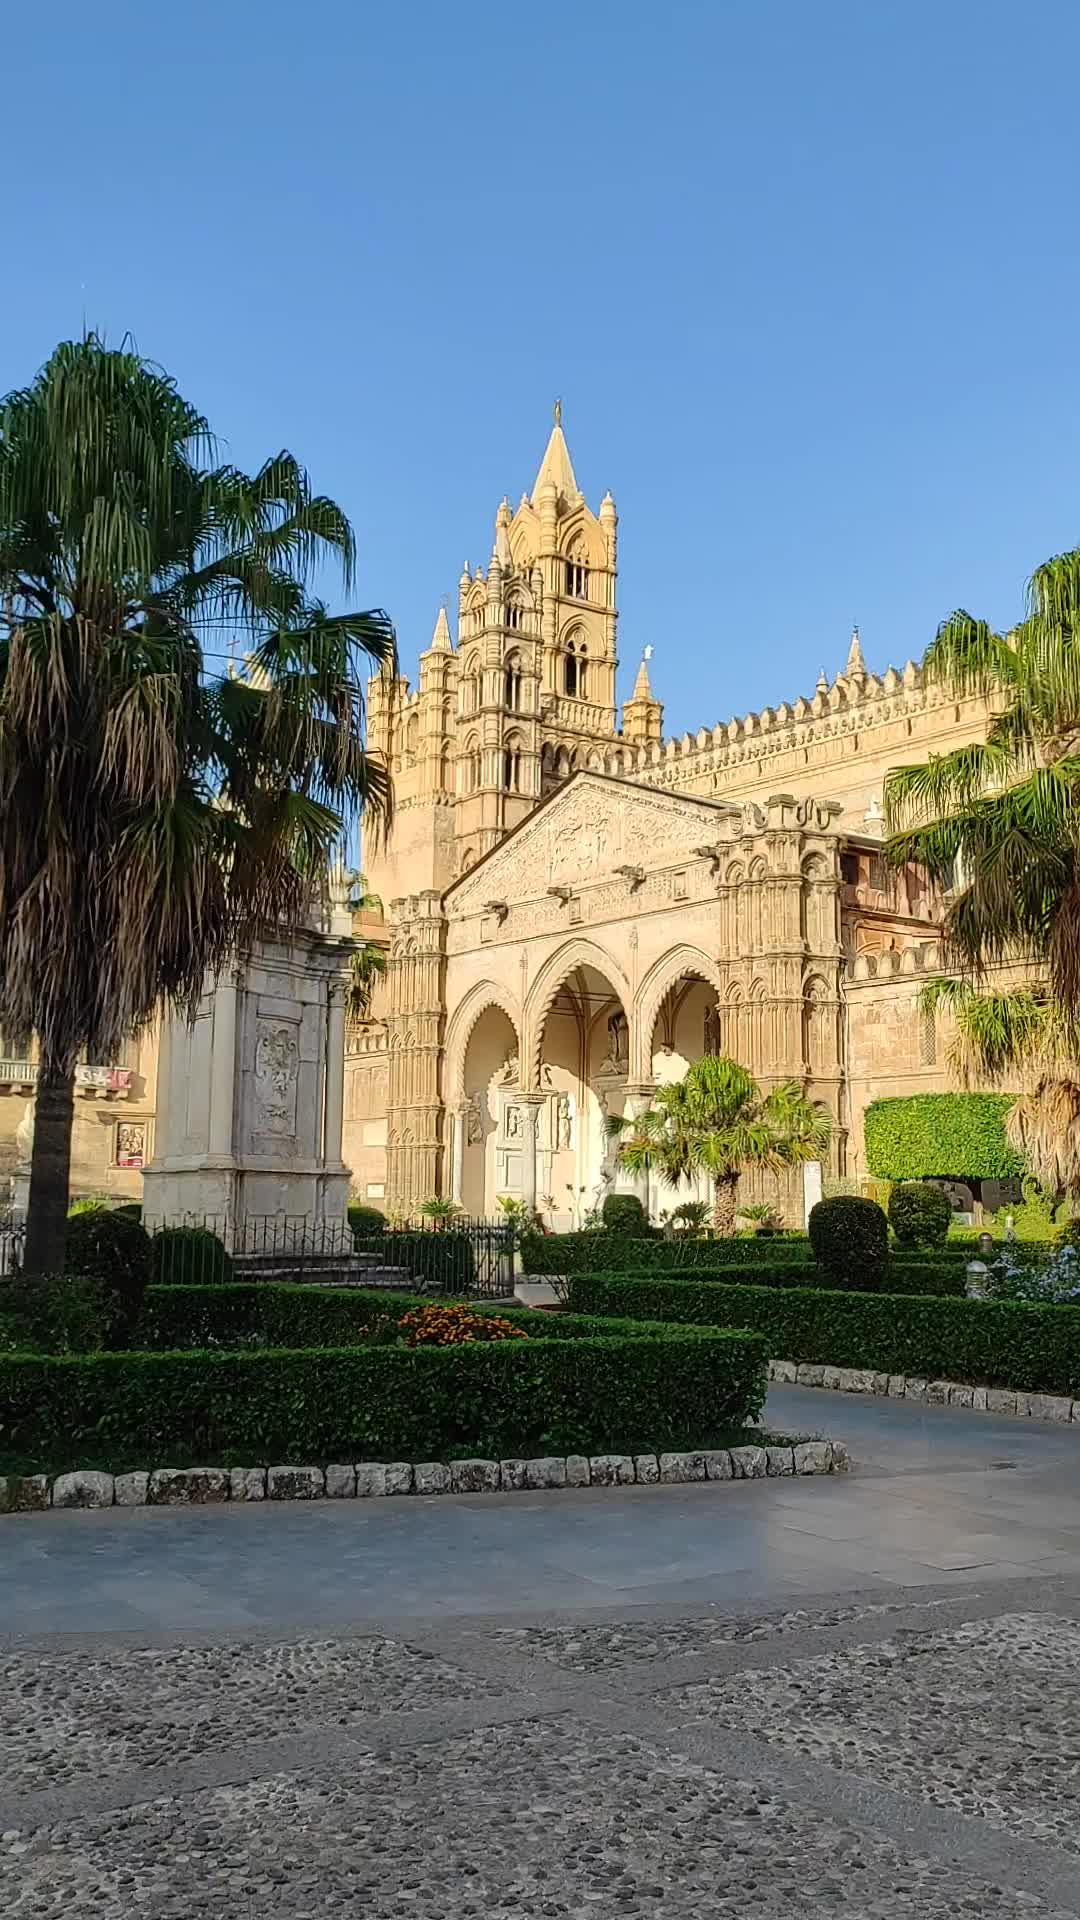 Discover the Majestic Cattedrale di Palermo